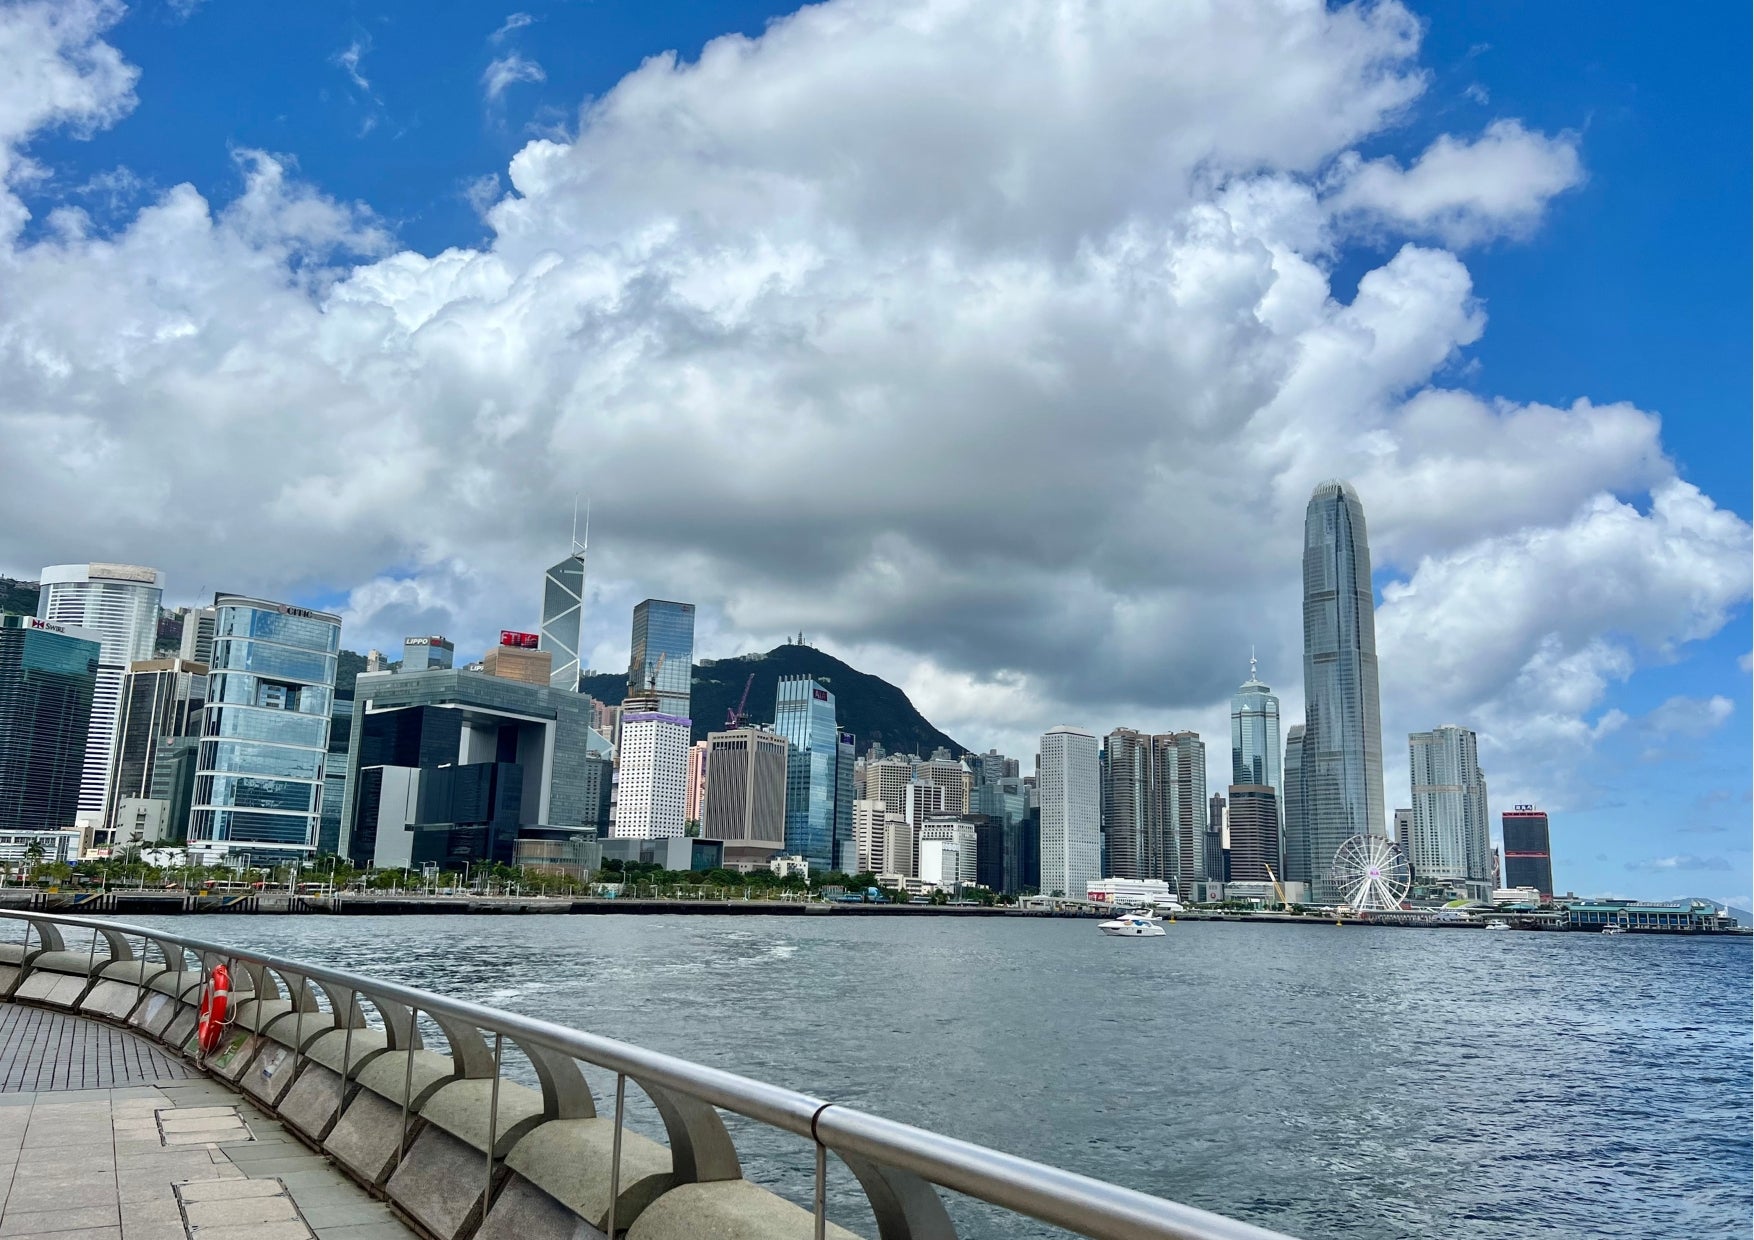 AmSTRONG Blog| 4 Rewarding Running Routes on Hong Kong Island